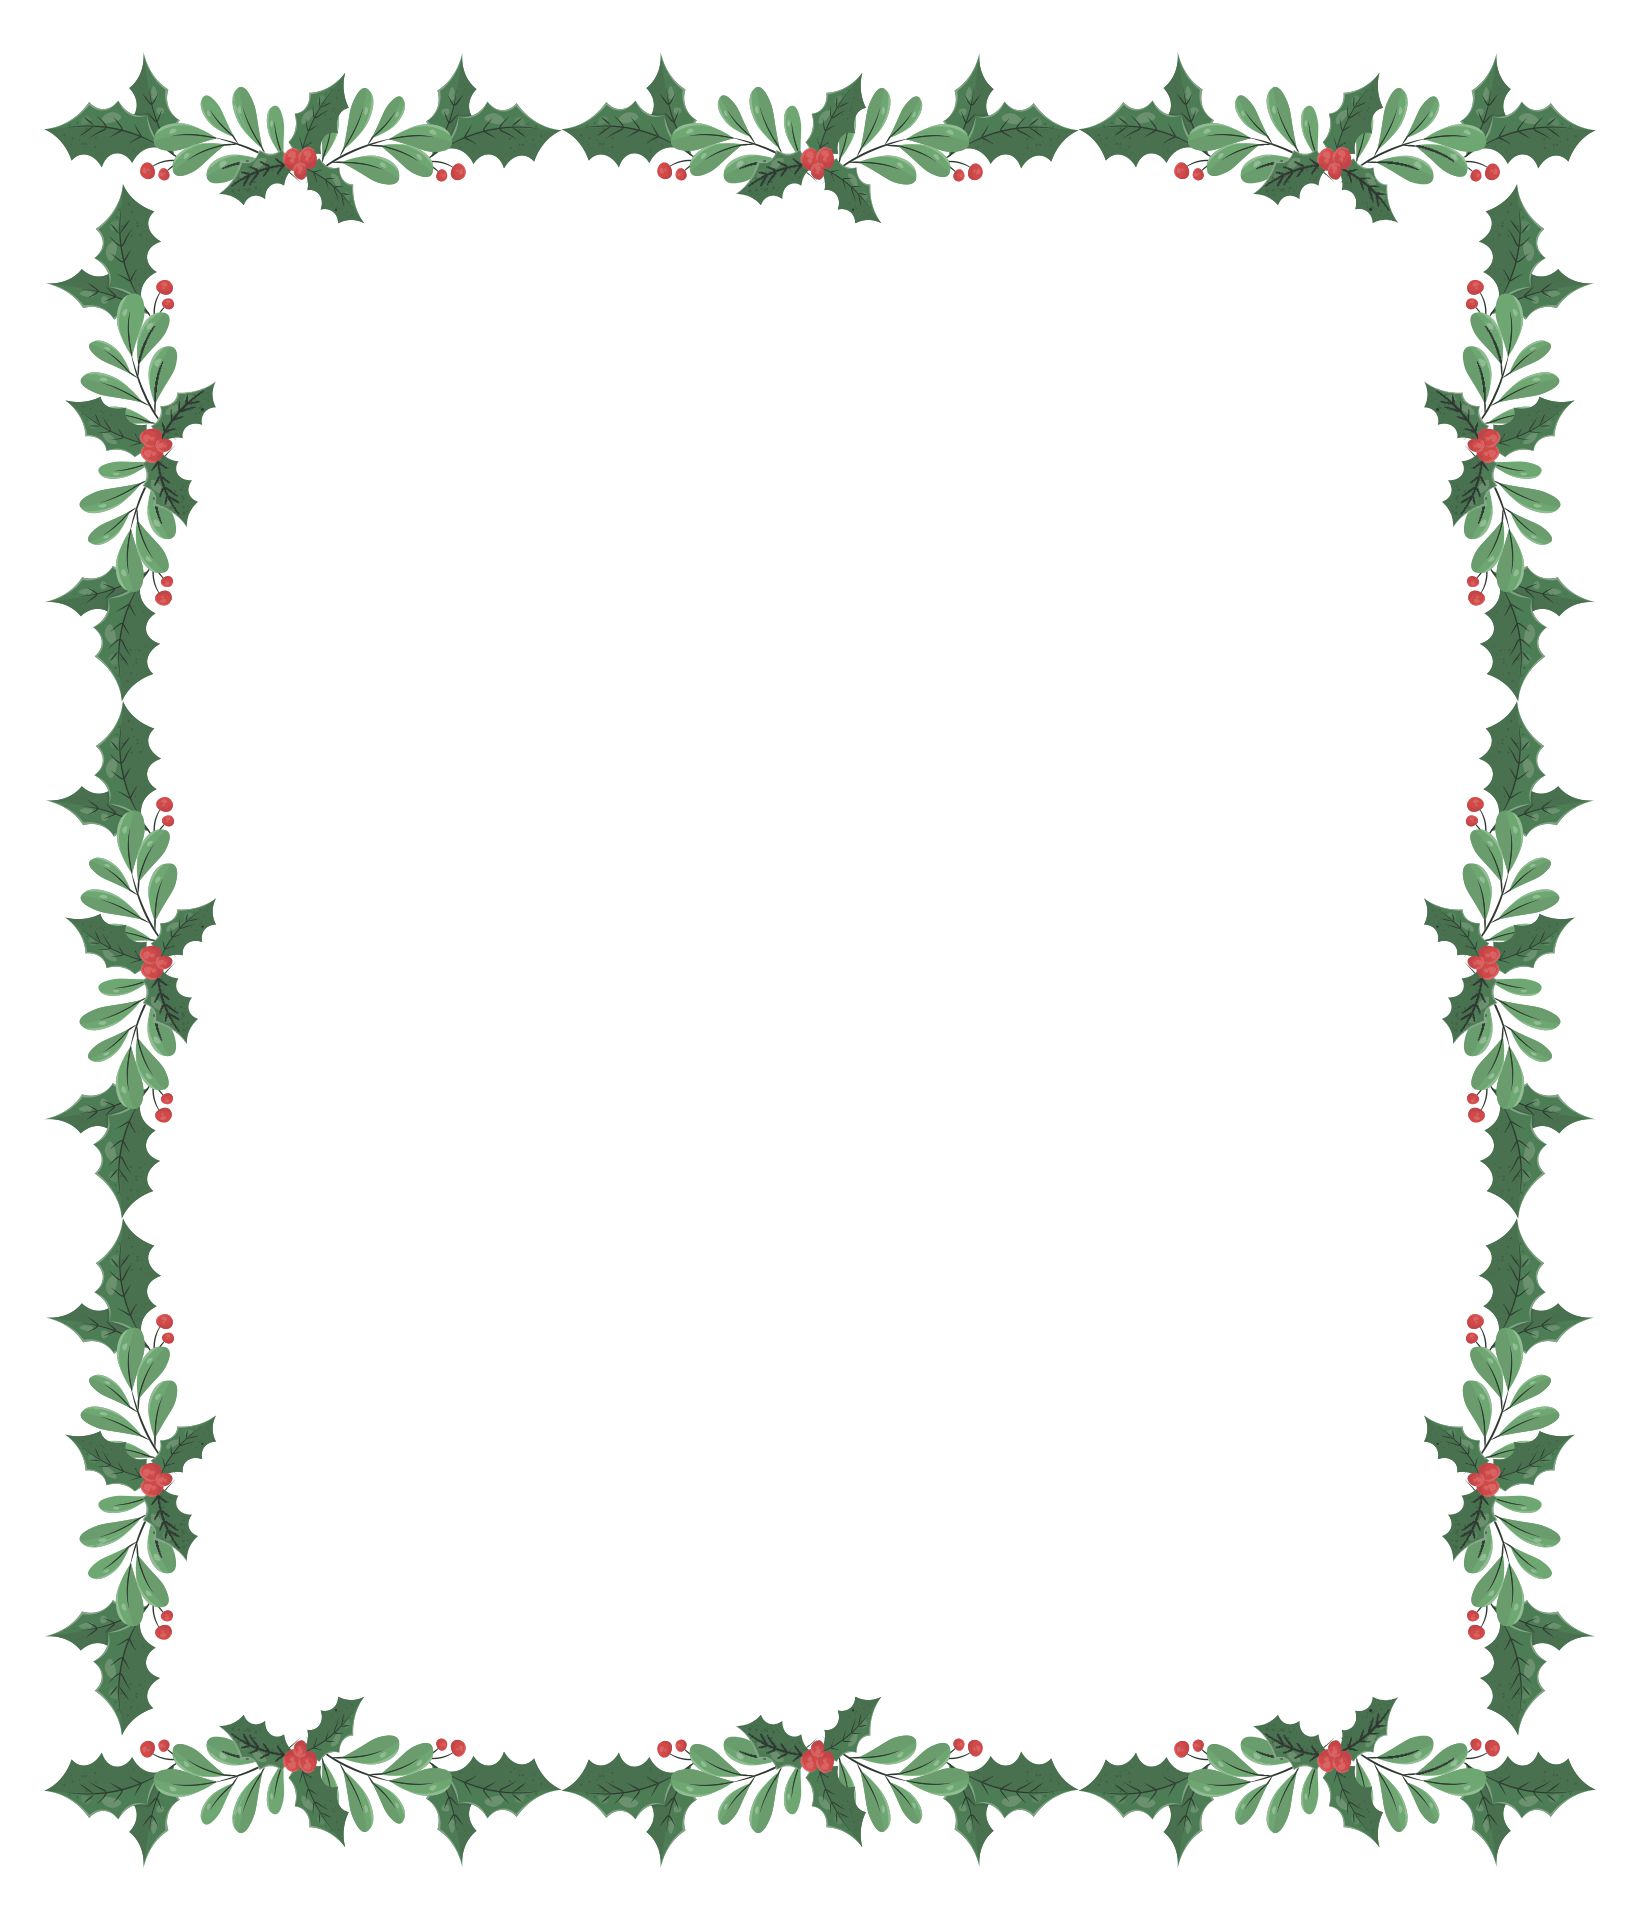 Printable Christmas Border Paper Stationery - Printable World Holiday